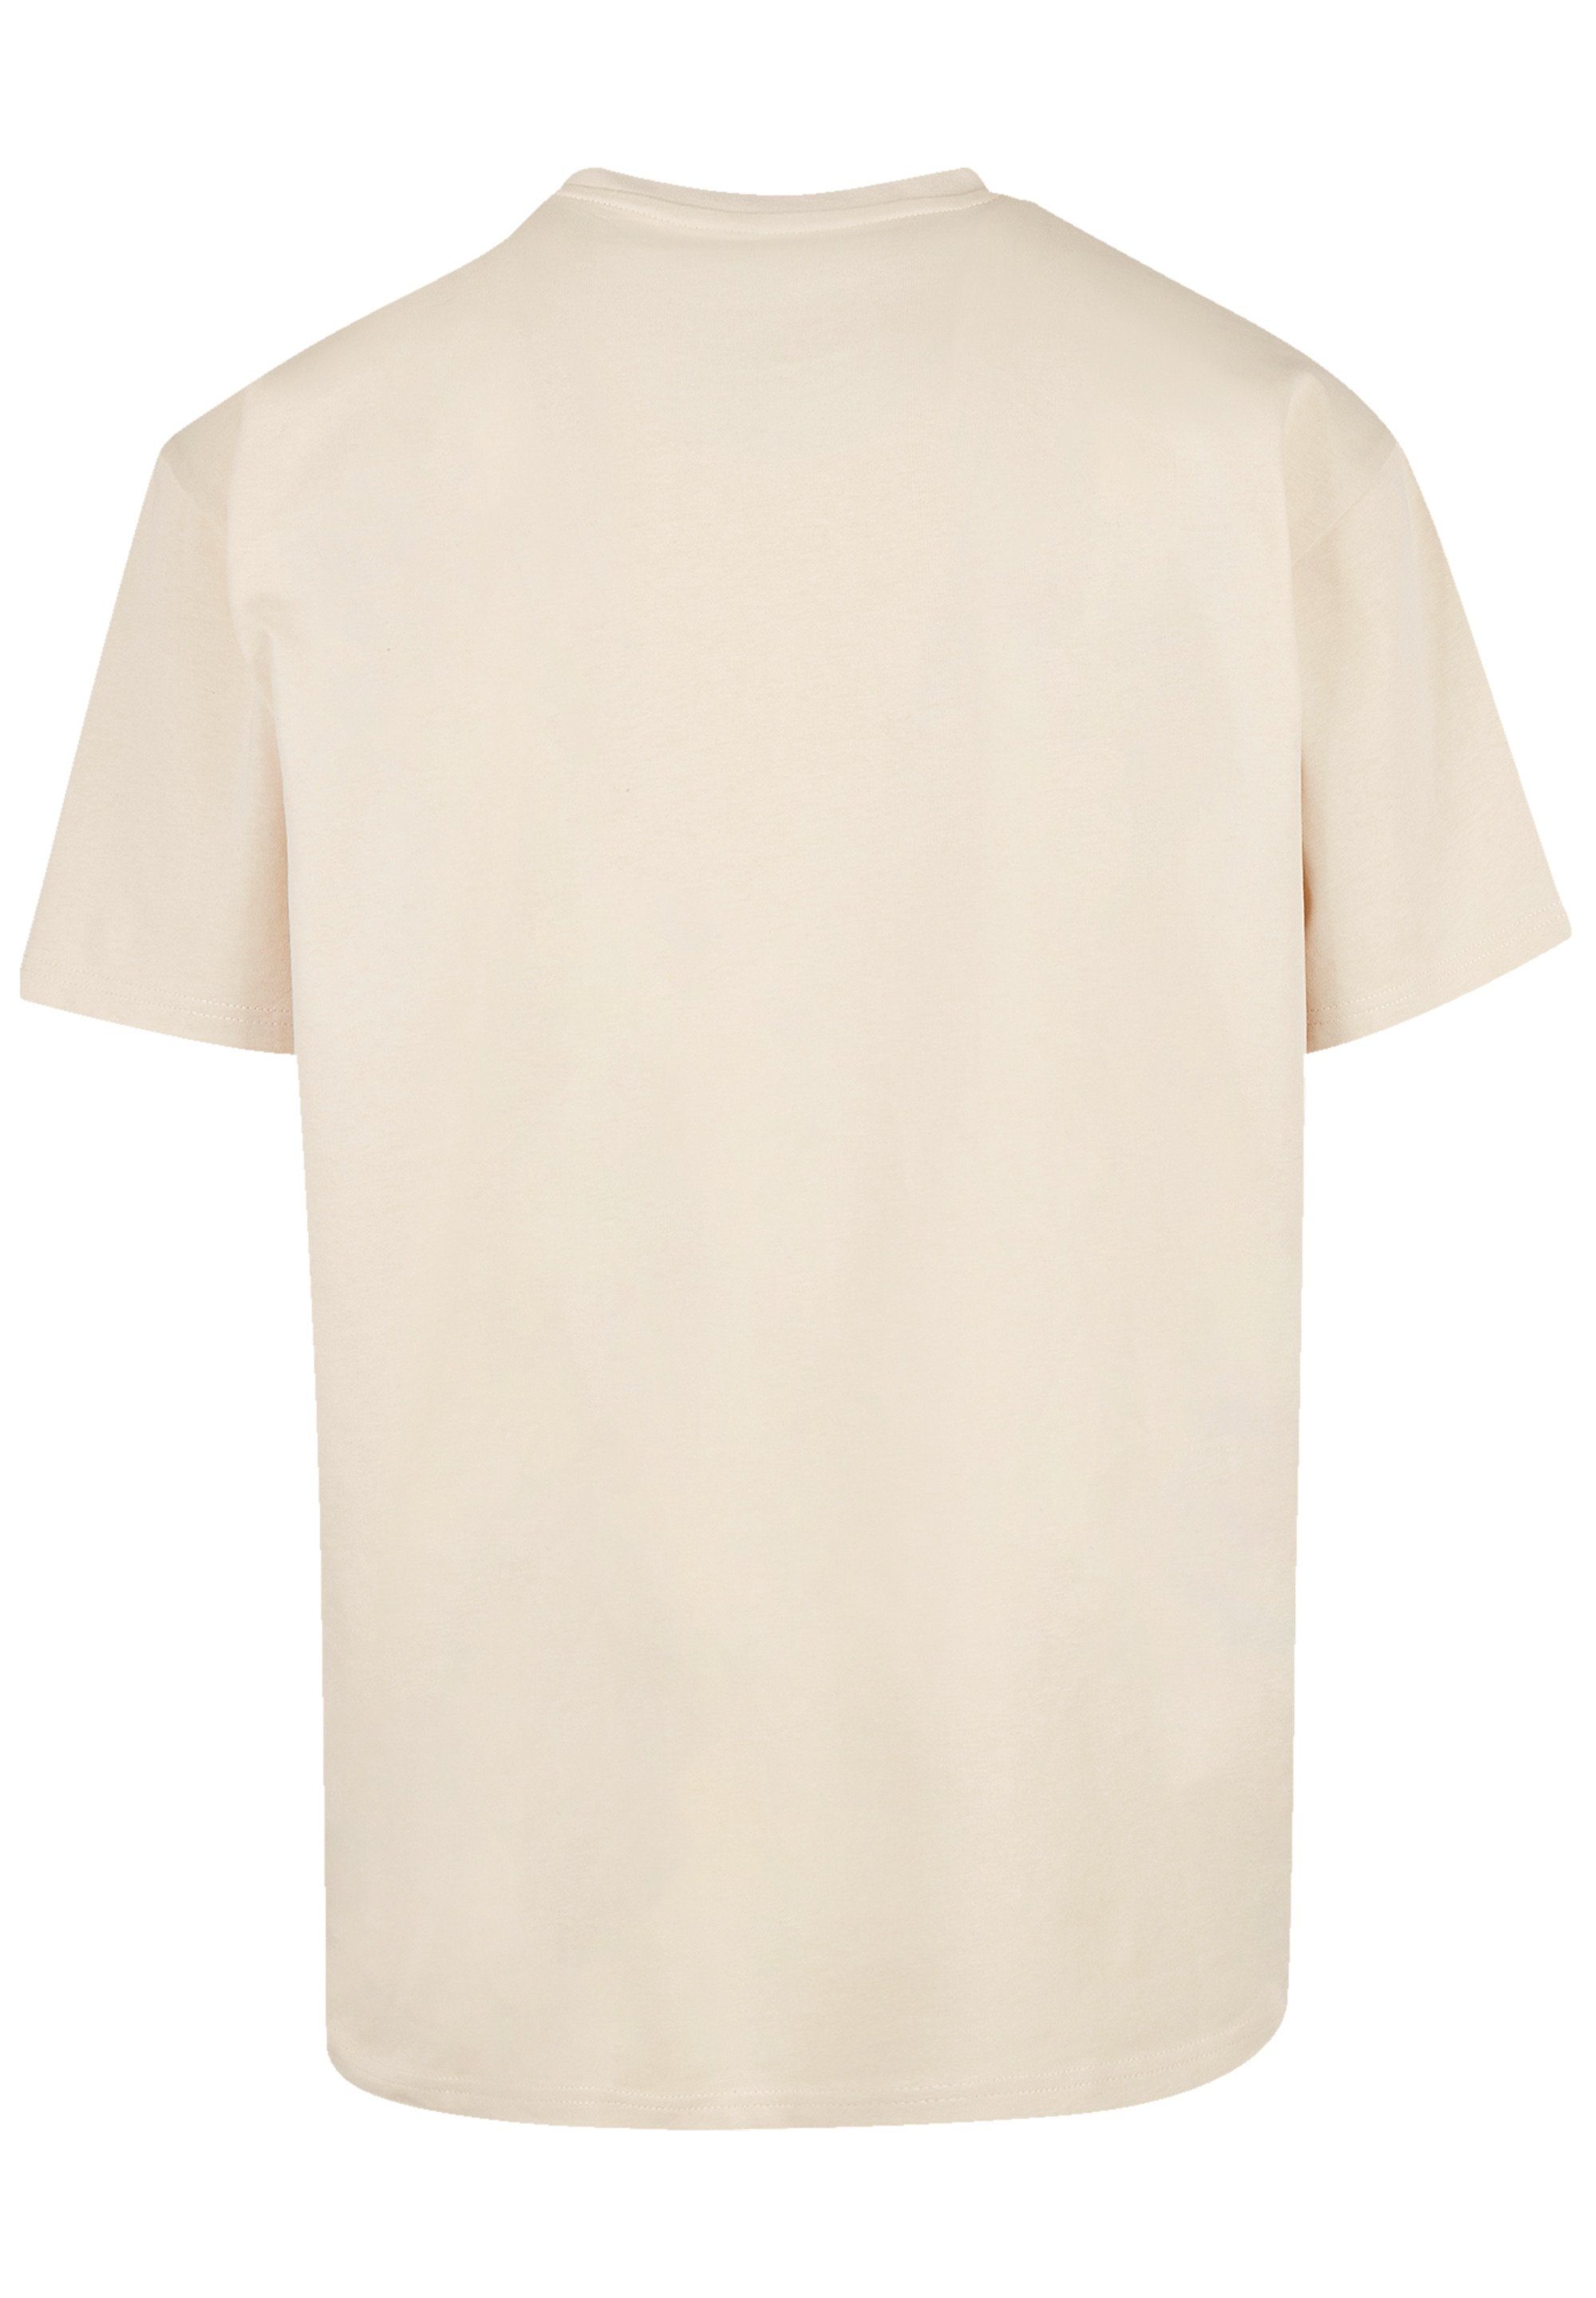 Eisbär T-Shirt sand F4NT4STIC Print